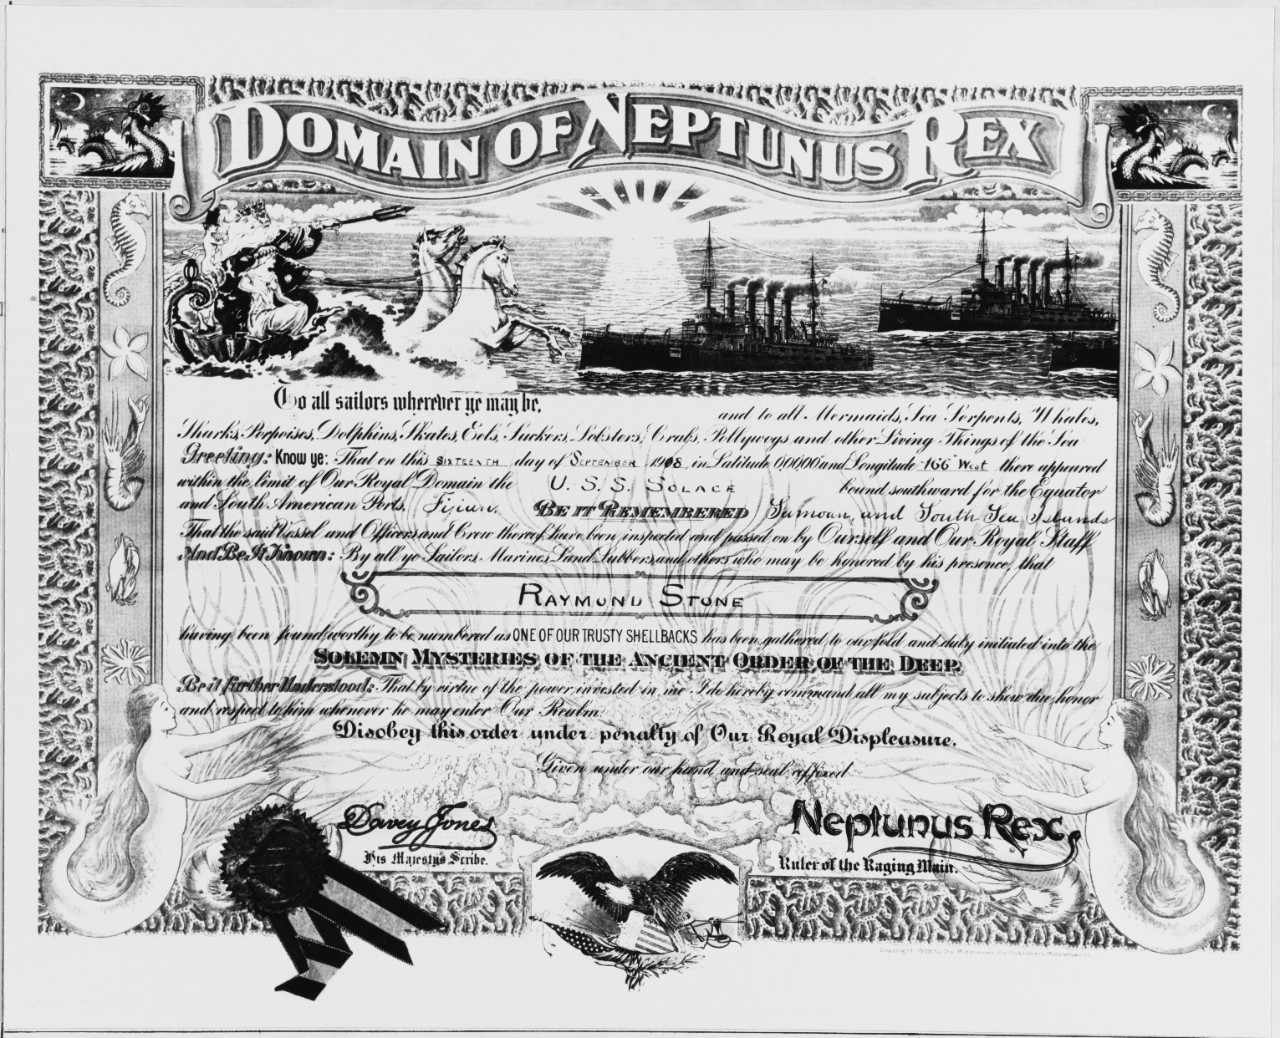 Shellback Certificate, 1908